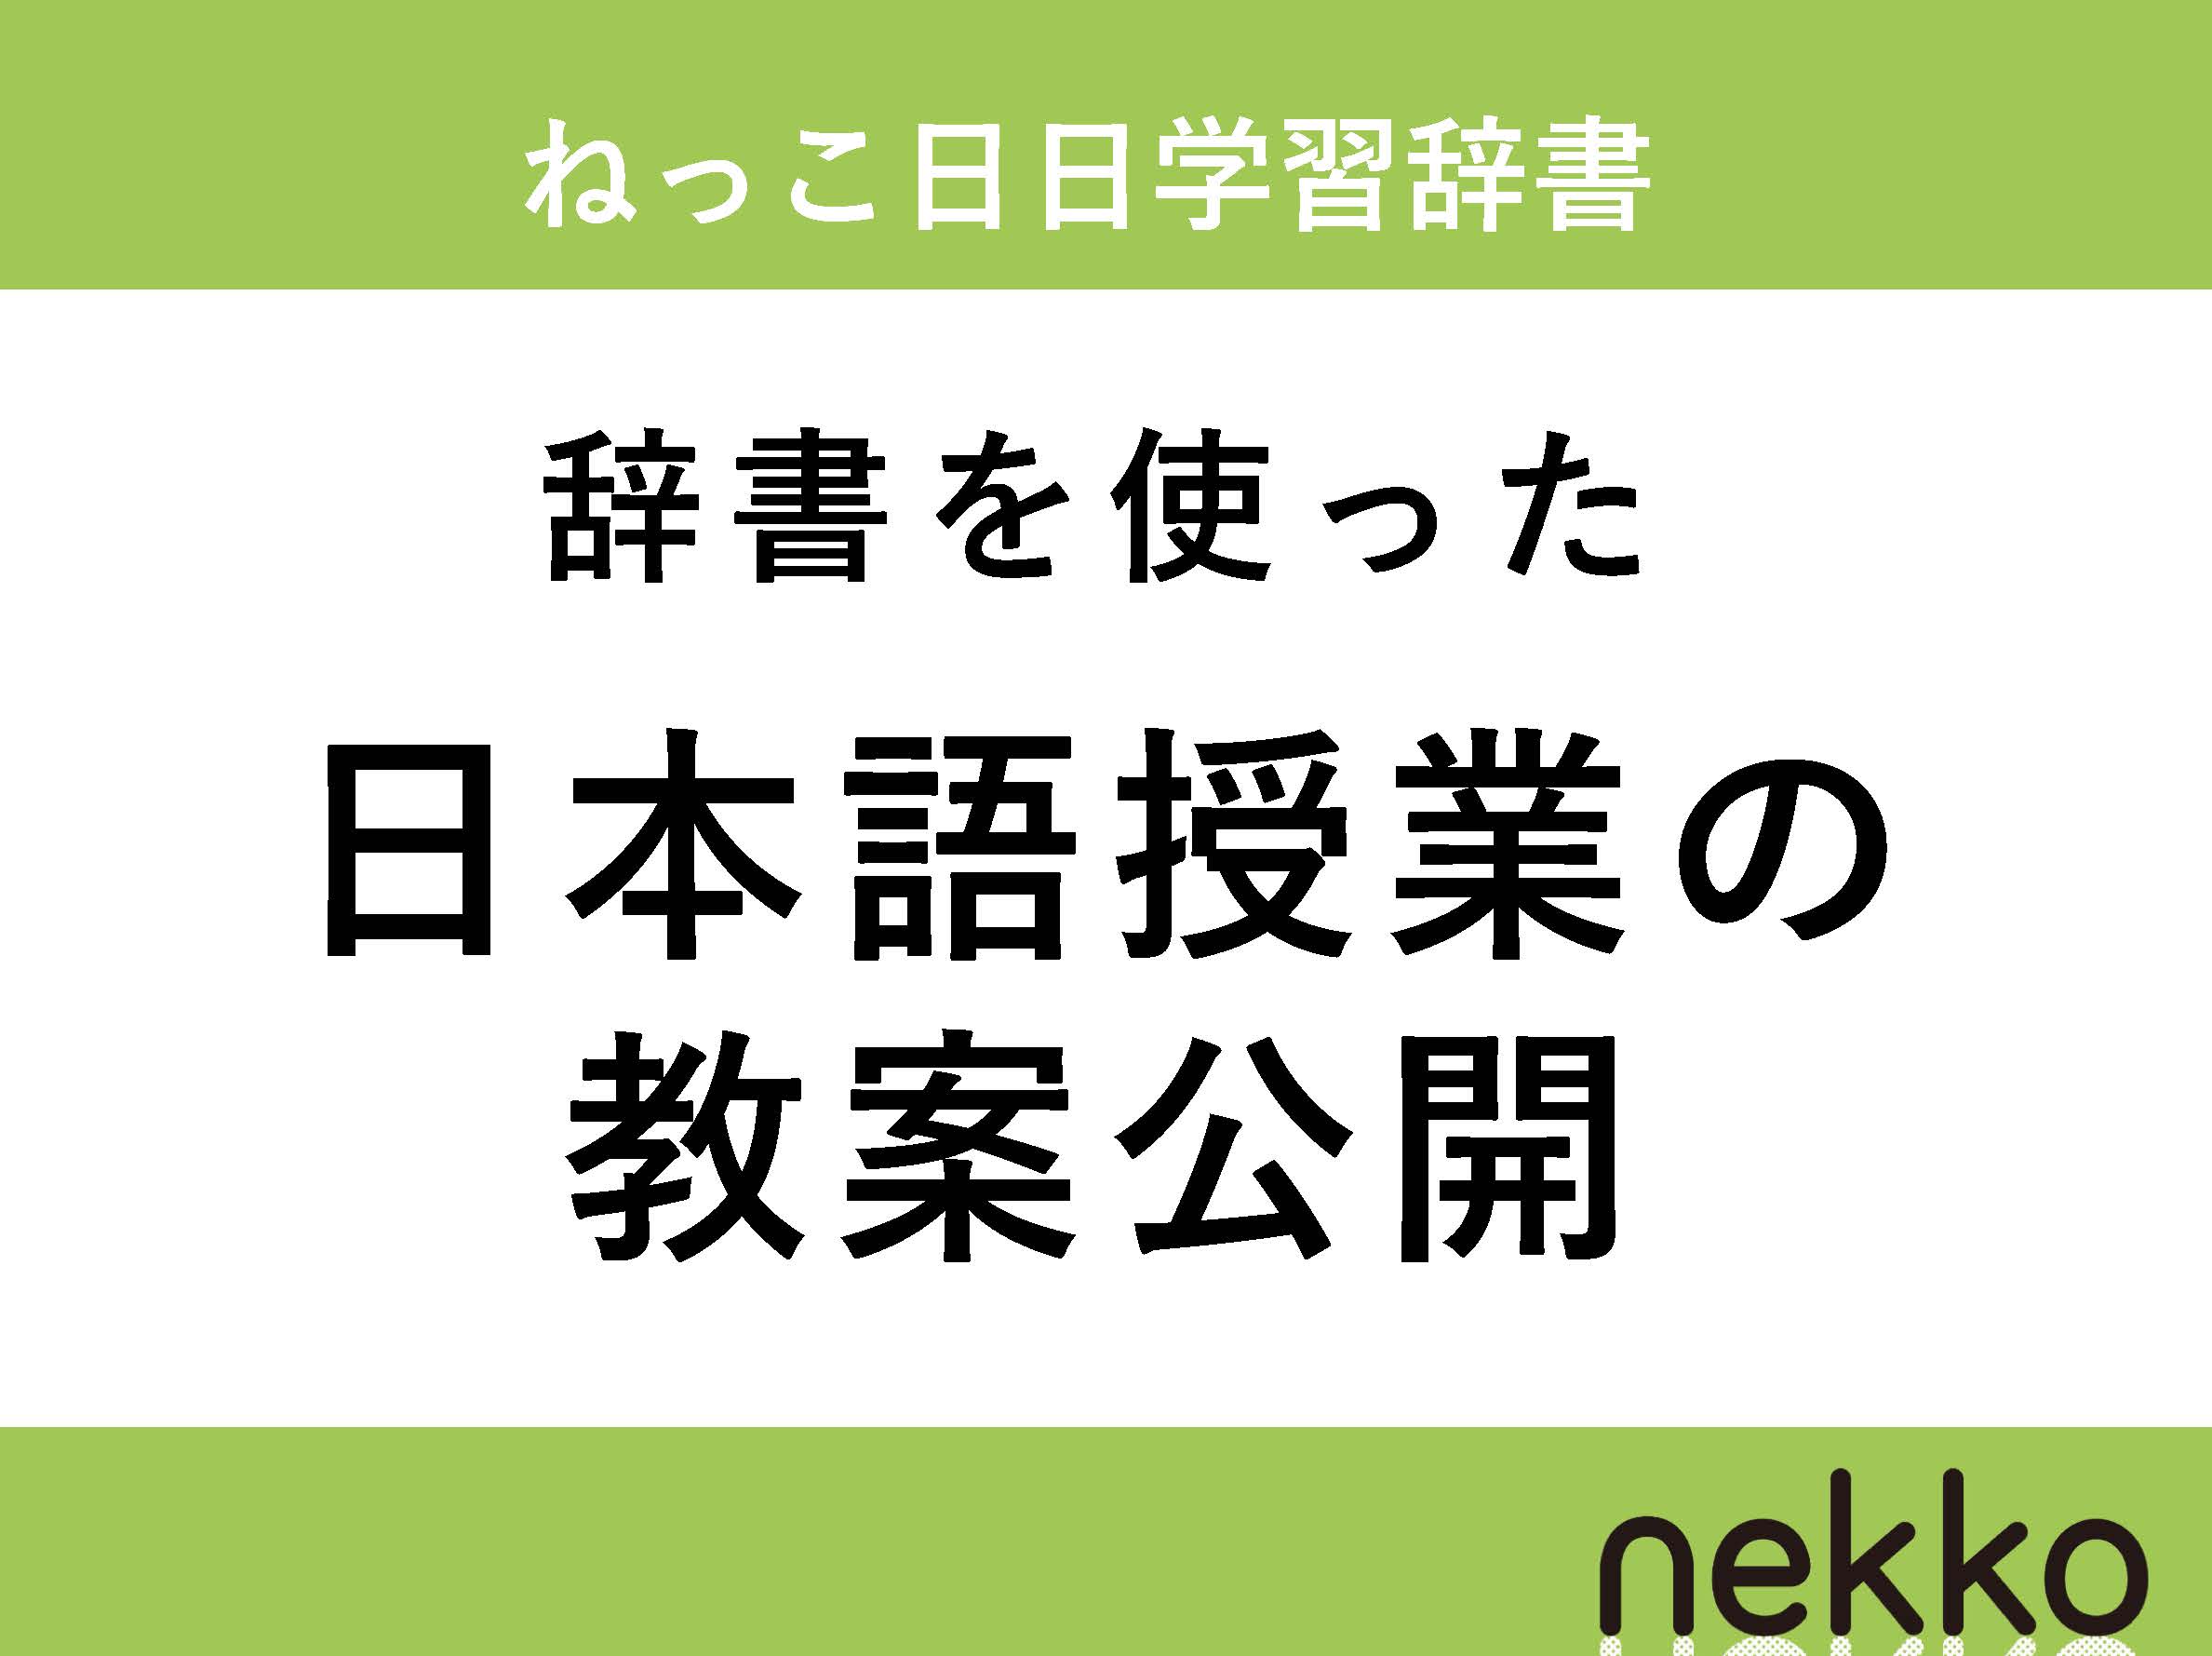 【ねっこ日日学習辞書】辞書を使った日本語授業の教案を公開